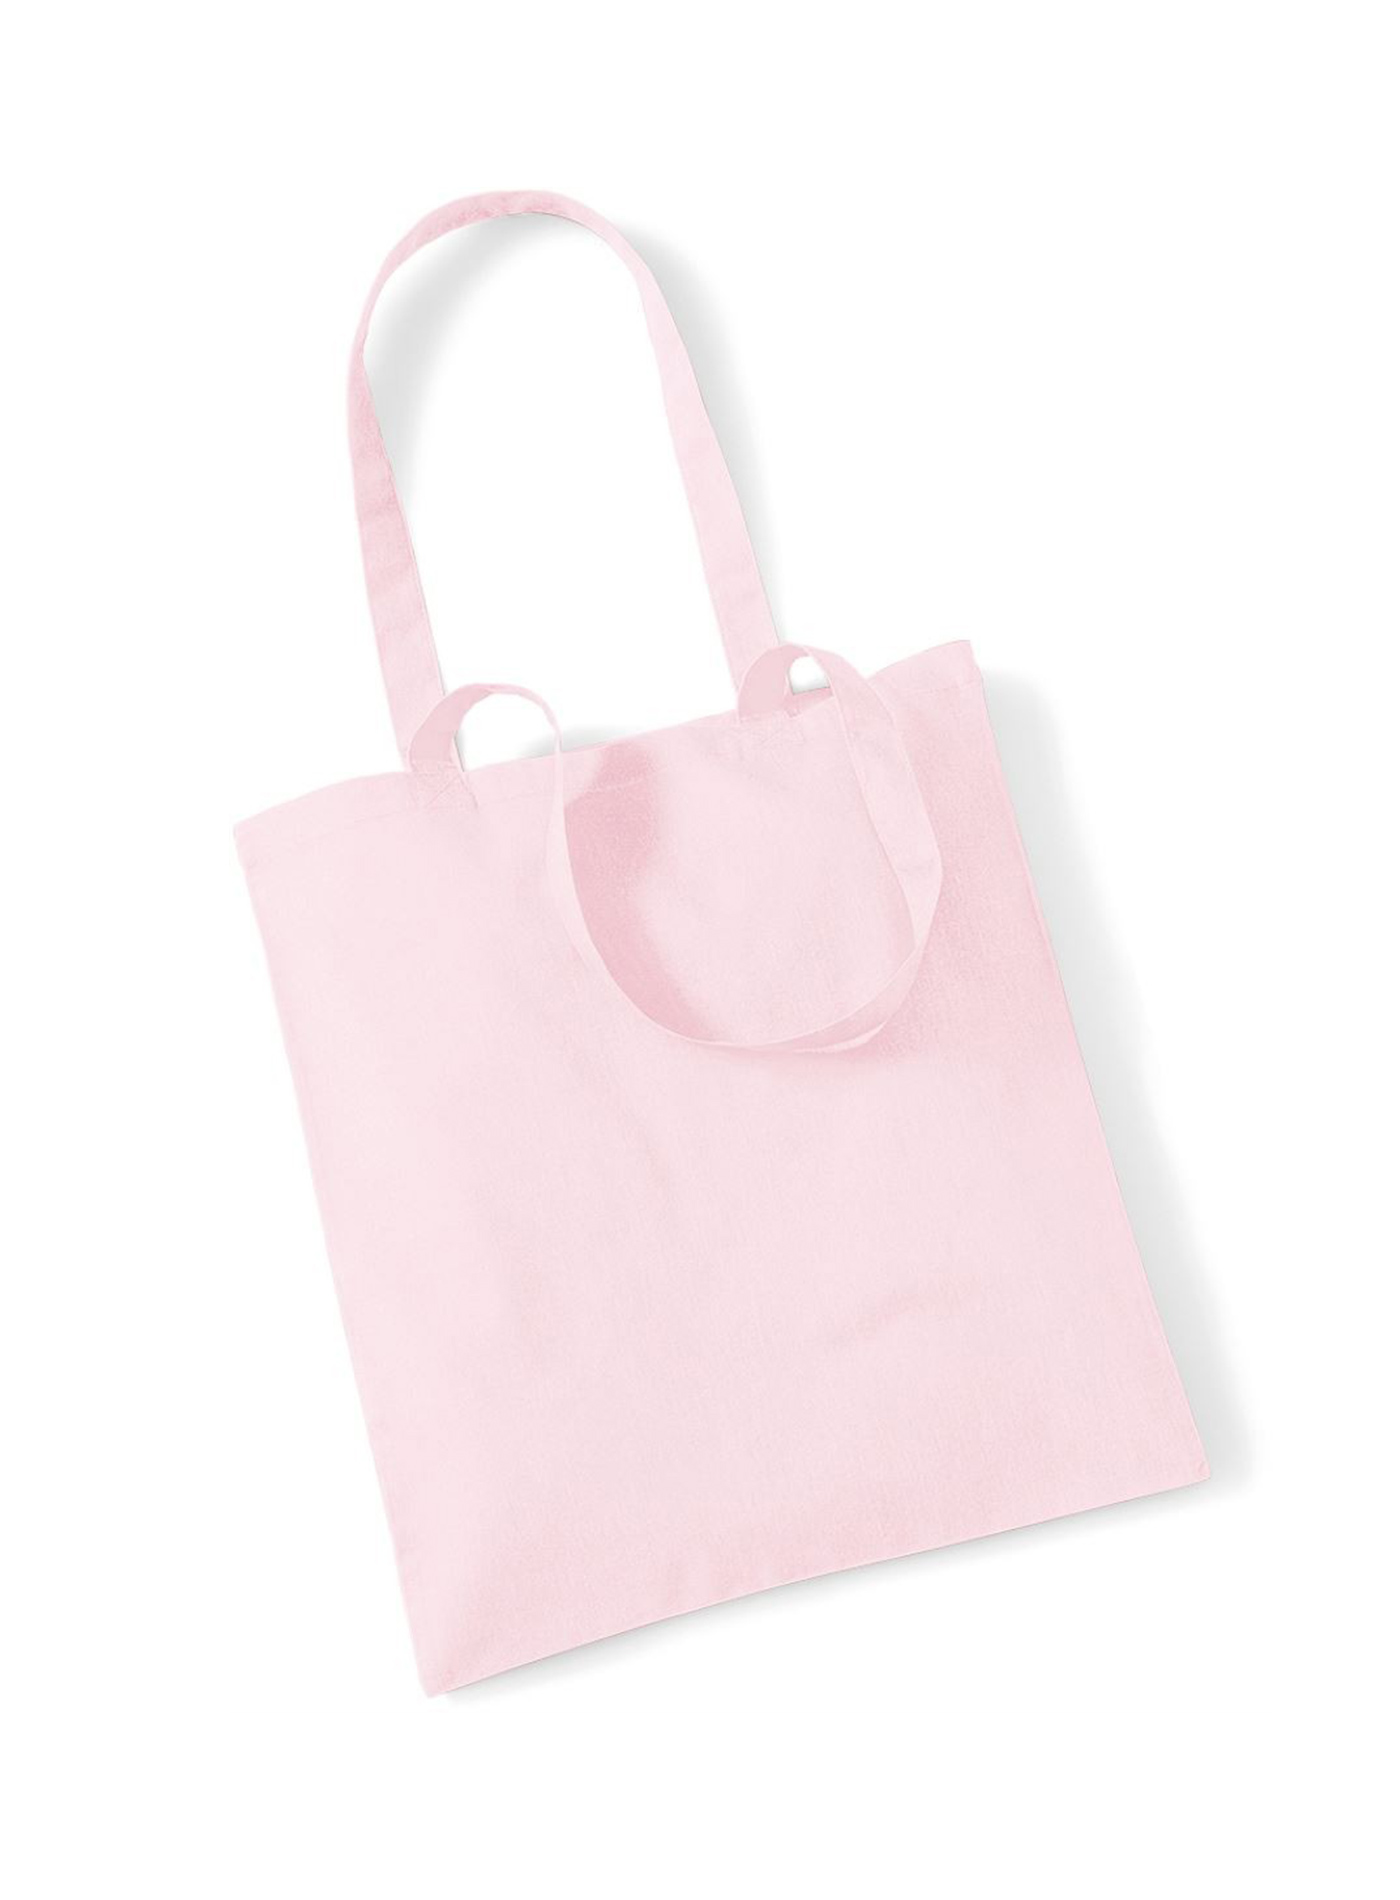 Plátěná taška - Bledě růžová univerzal